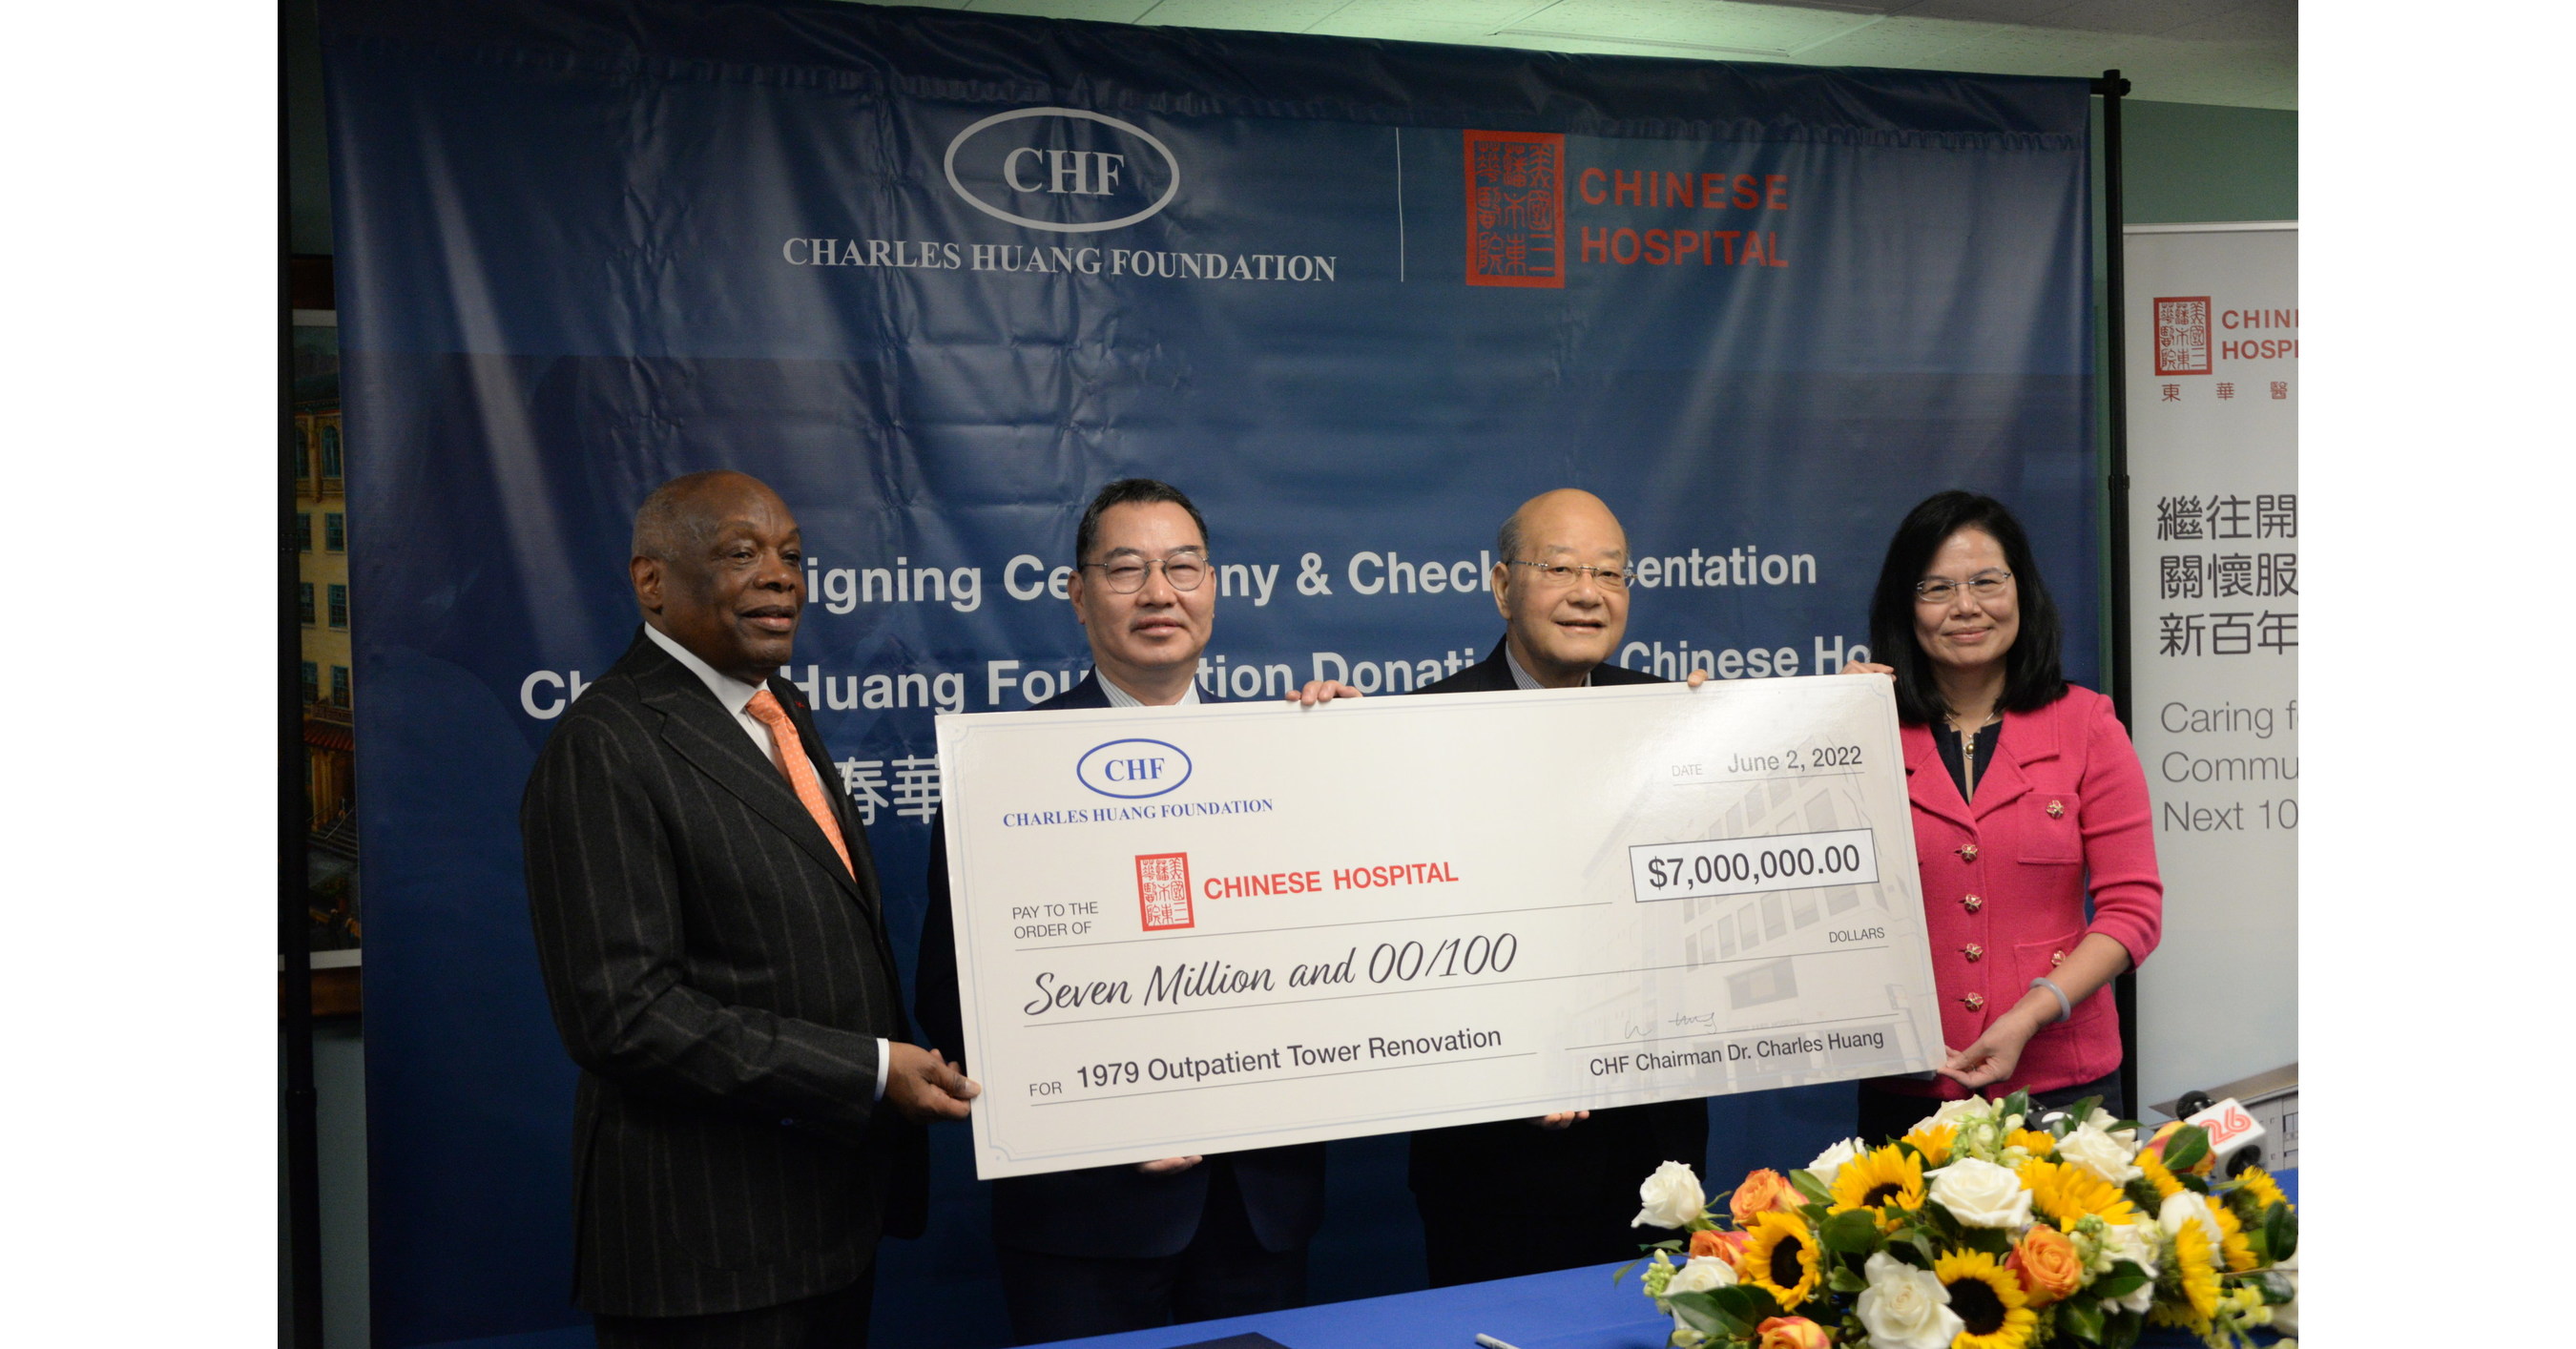 商业领袖、创新者和哲学专家 d. 查尔斯·黄向中华医院捐款700万美元